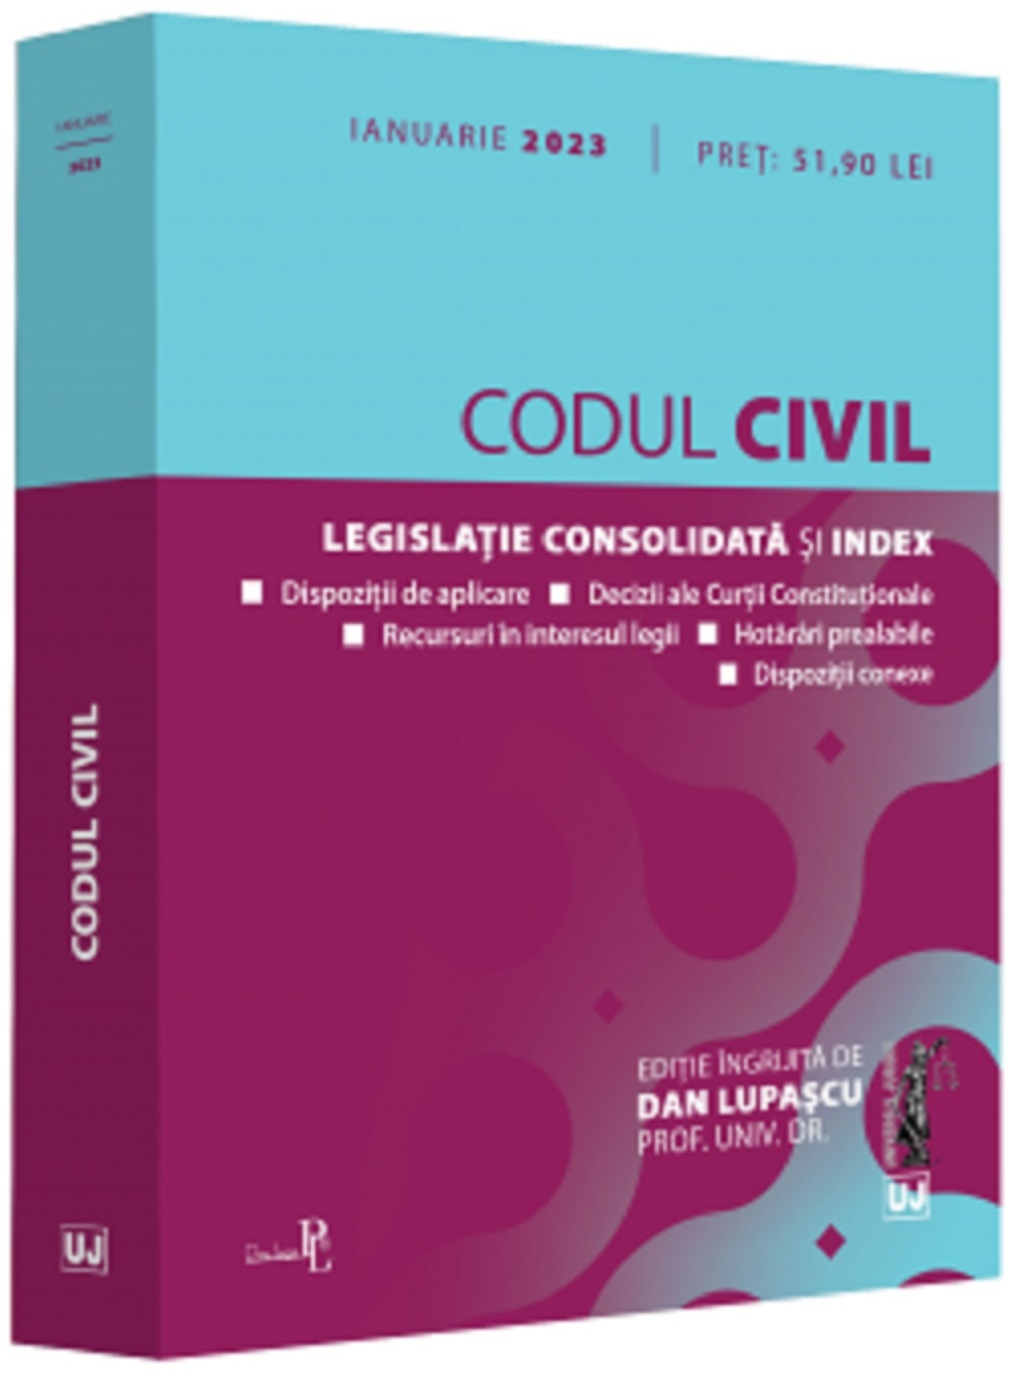 Codul Civil - Ianuarie 2023 | Dan Lupascu